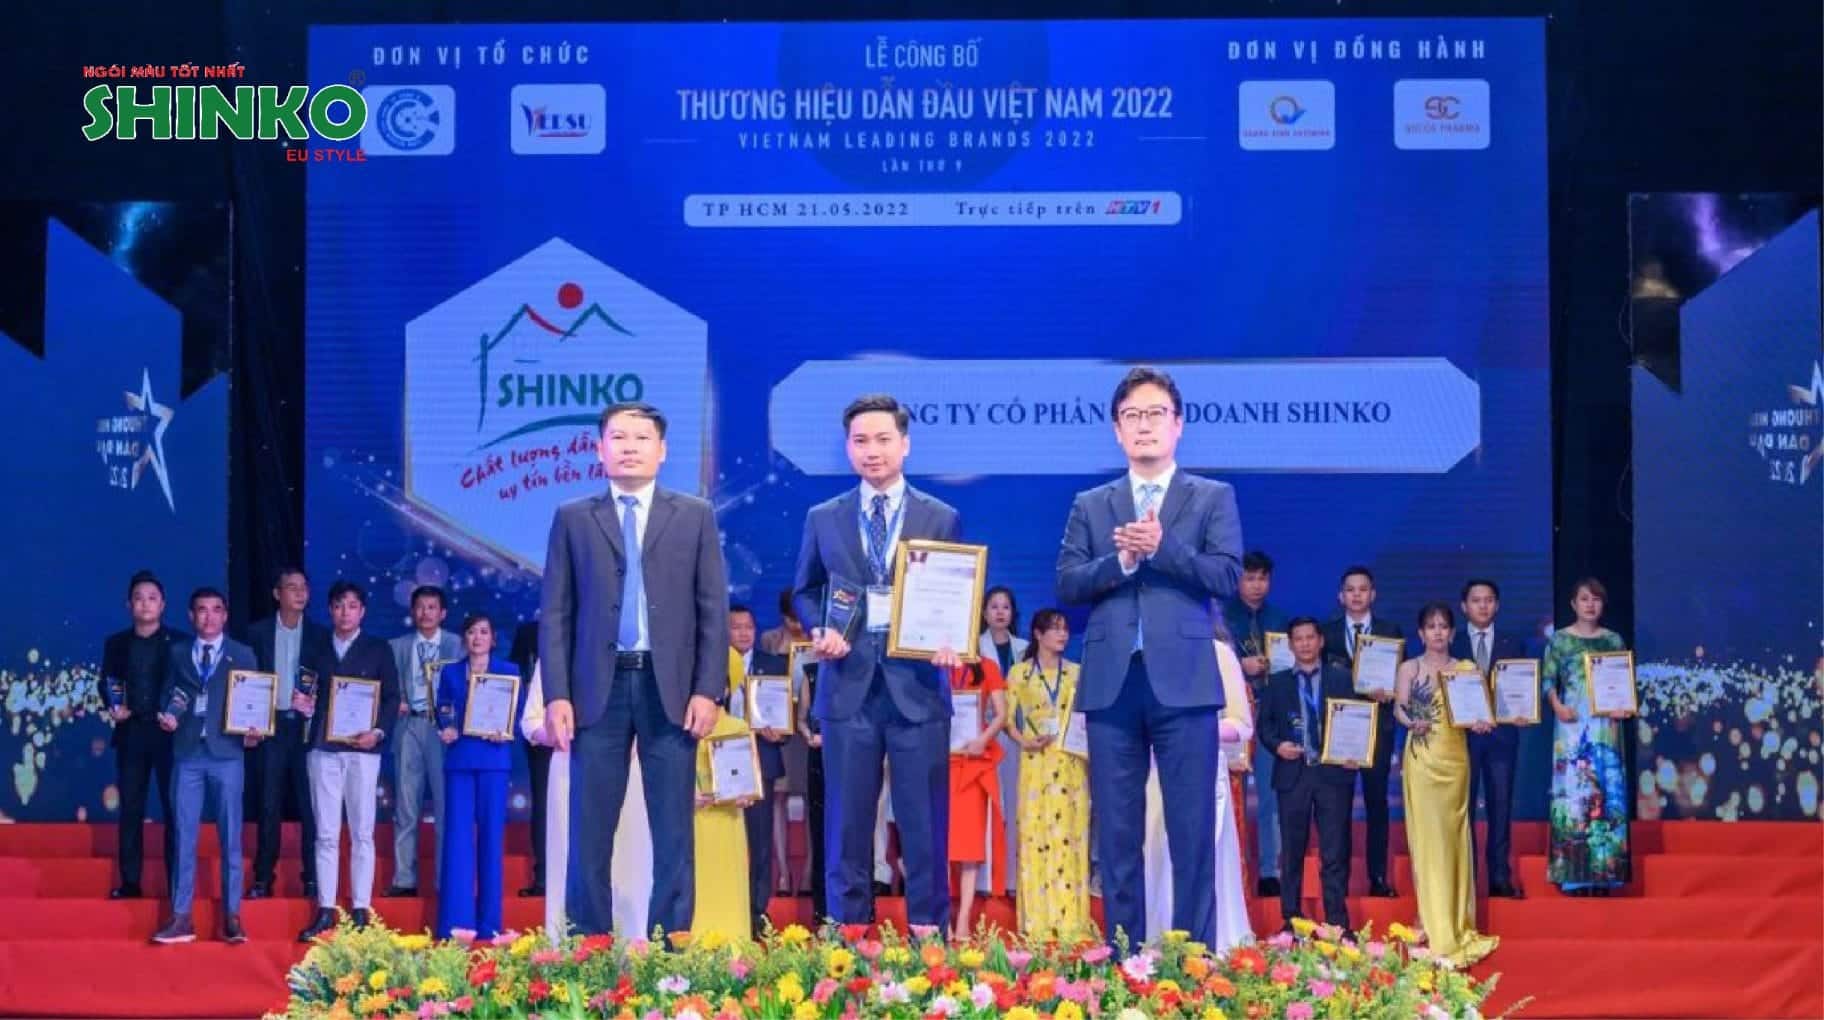 Ông nguyễn trung hiếu, tổng giám đốc công ty cổ phần liên doanh shinko, vinh dự đón nhận giải thưởng "top 10 - thương hiệu dẫn đầu việt nam"